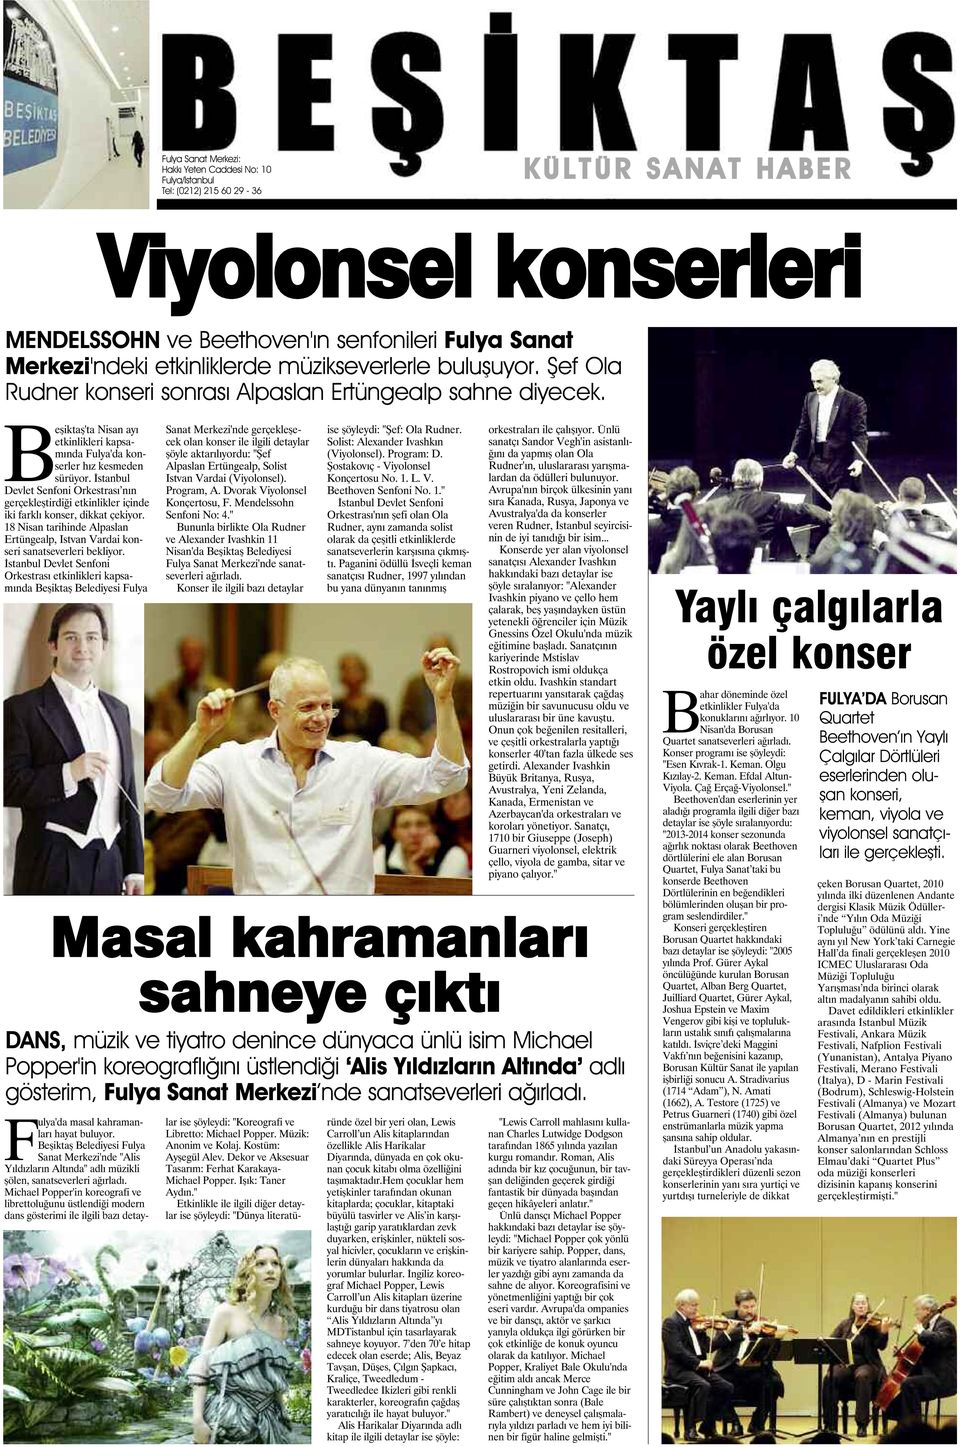 İstanbul Devlet Senfoni Orkestrası nın gerçekleştirdiği etkinlikler içinde iki farklı konser, dikkat çekiyor. 18 Nisan tarihinde Alpaslan Ertüngealp, Istvan Vardai konseri sanatseverleri bekliyor.